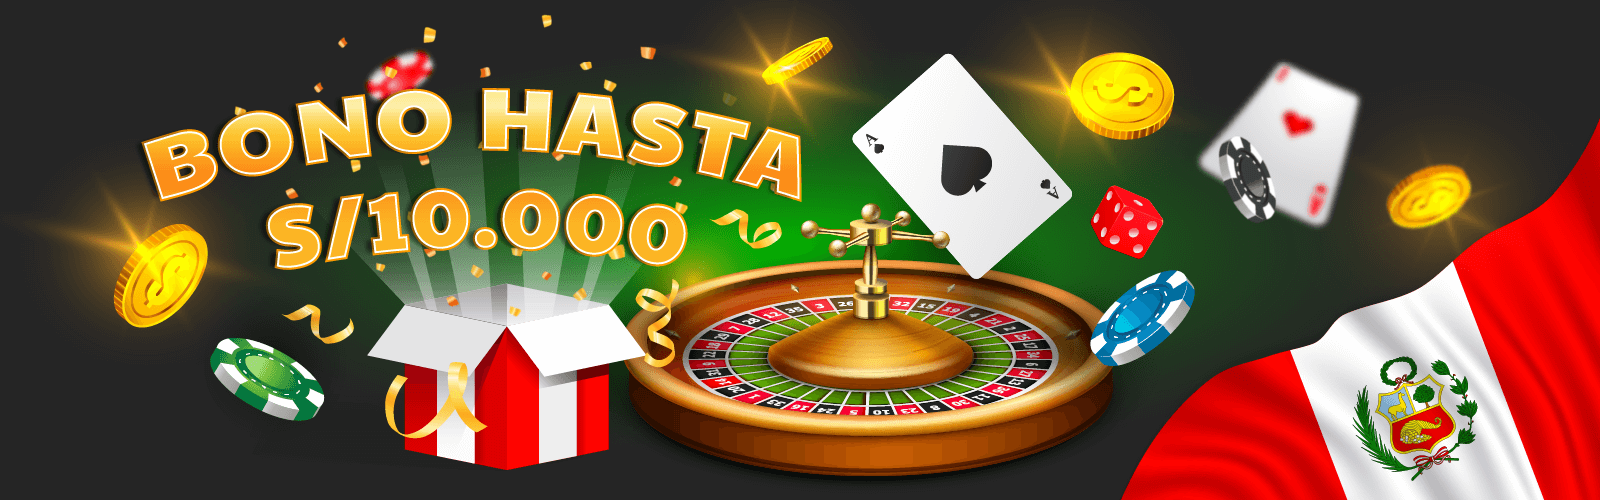 bonos en casinos online peruanos